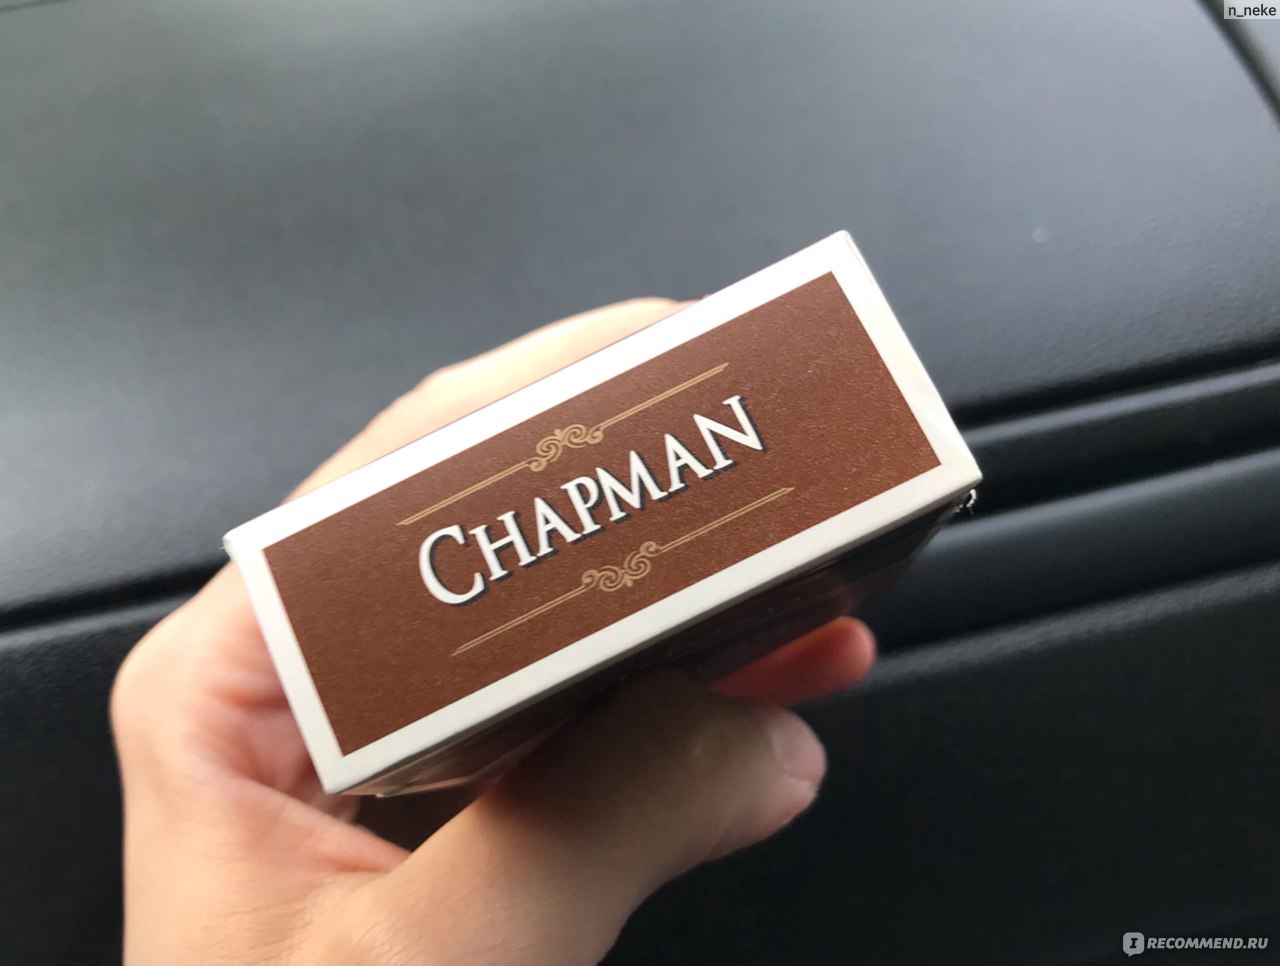 Сигареты Chapman Brown фото